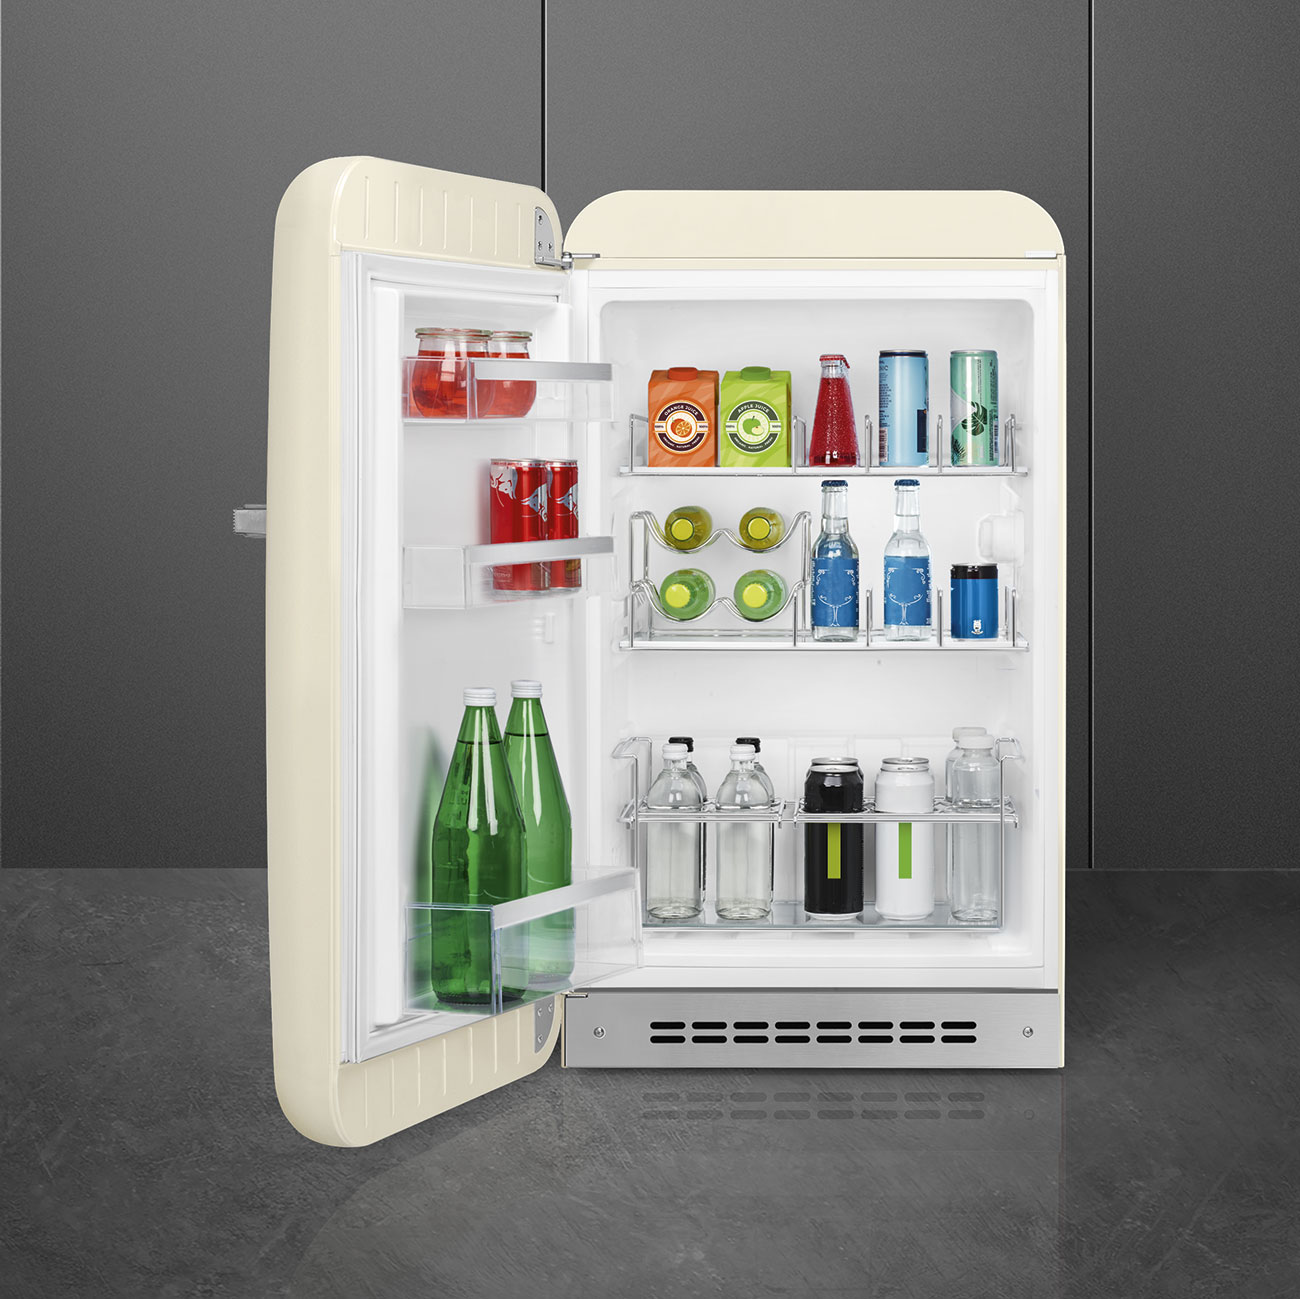 Cream refrigerator - Smeg_6